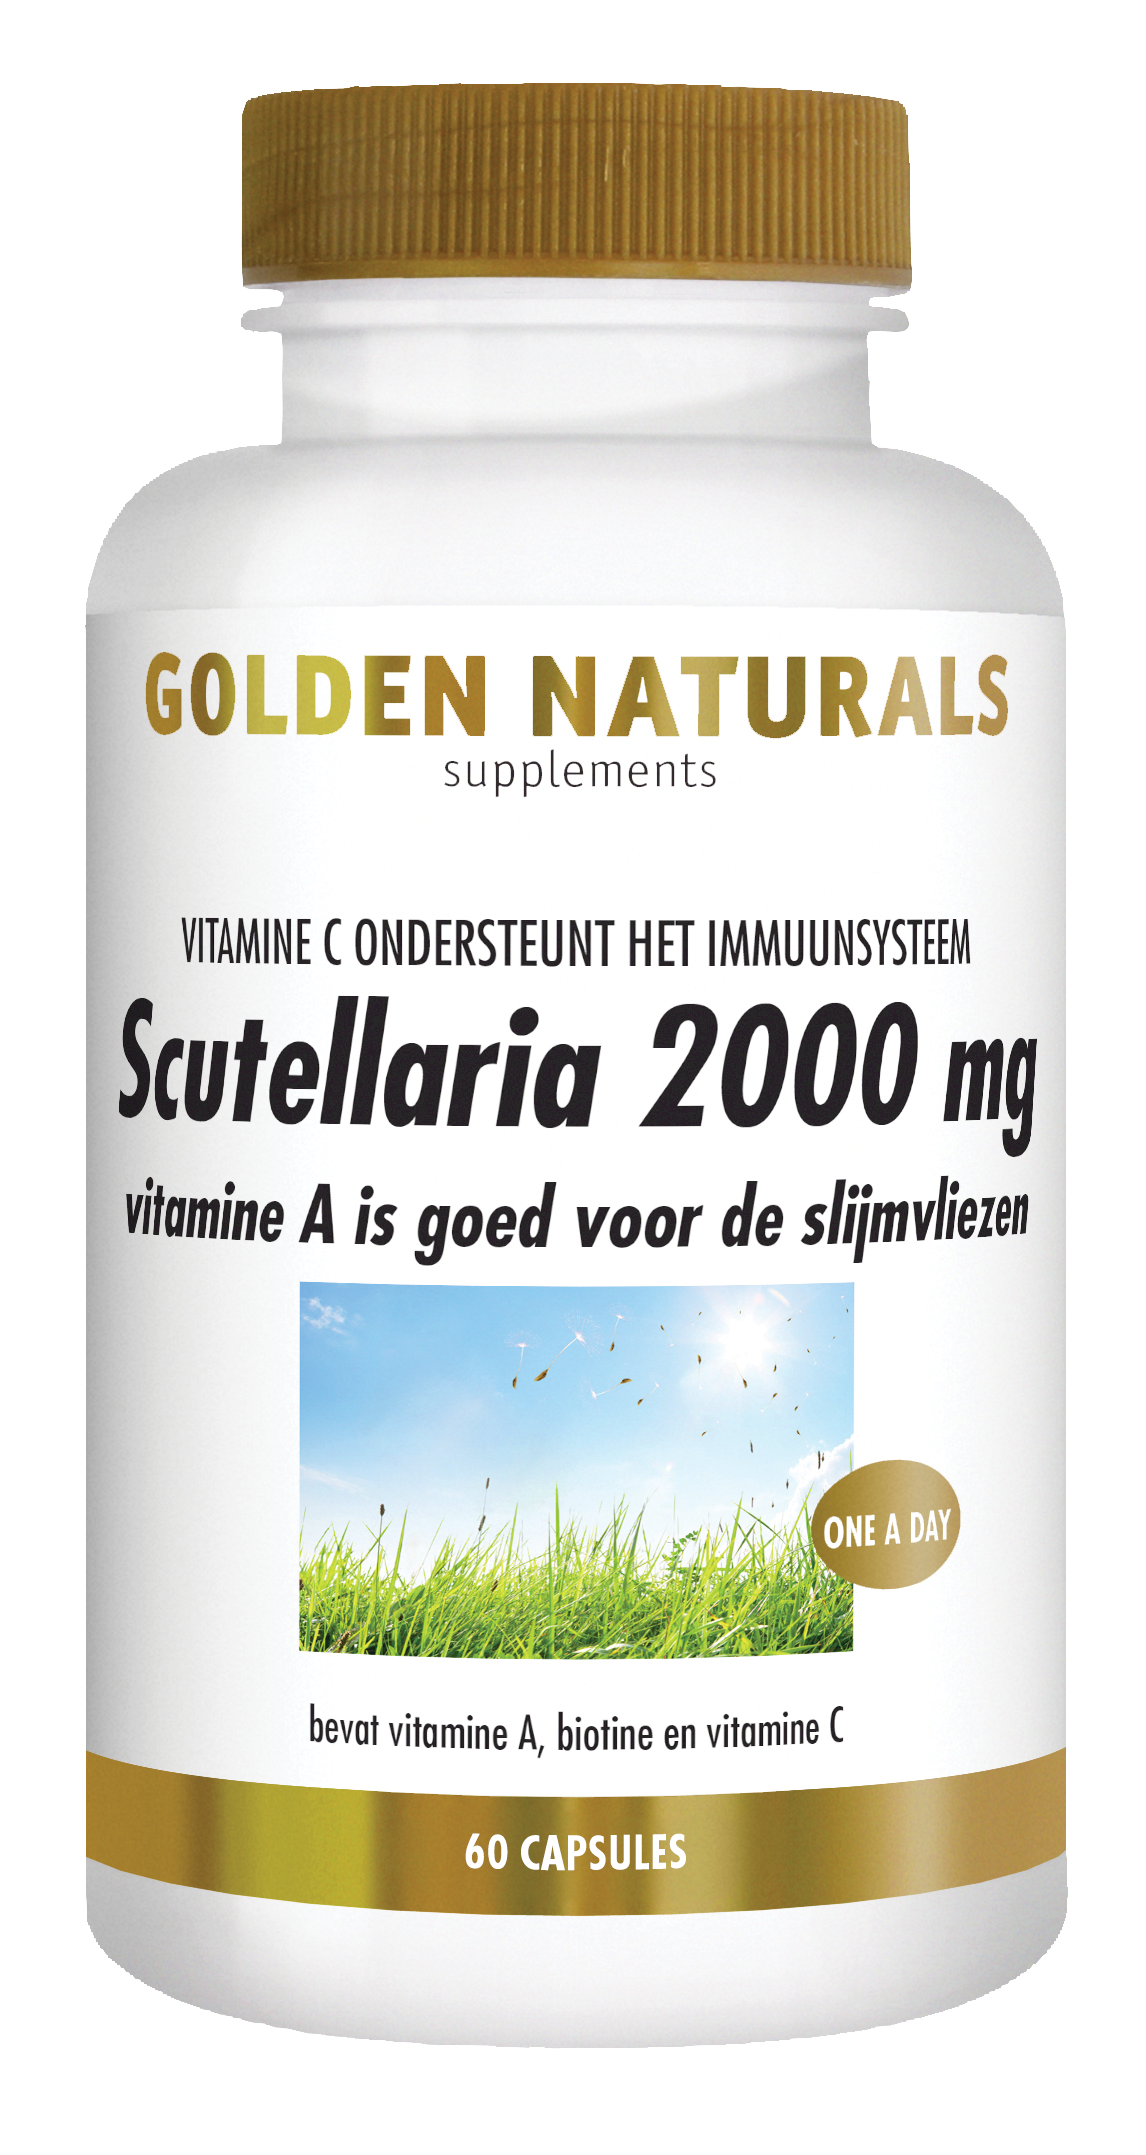 Golden Naturals Scutellaria 2000 mg (60 veganistische capsules)